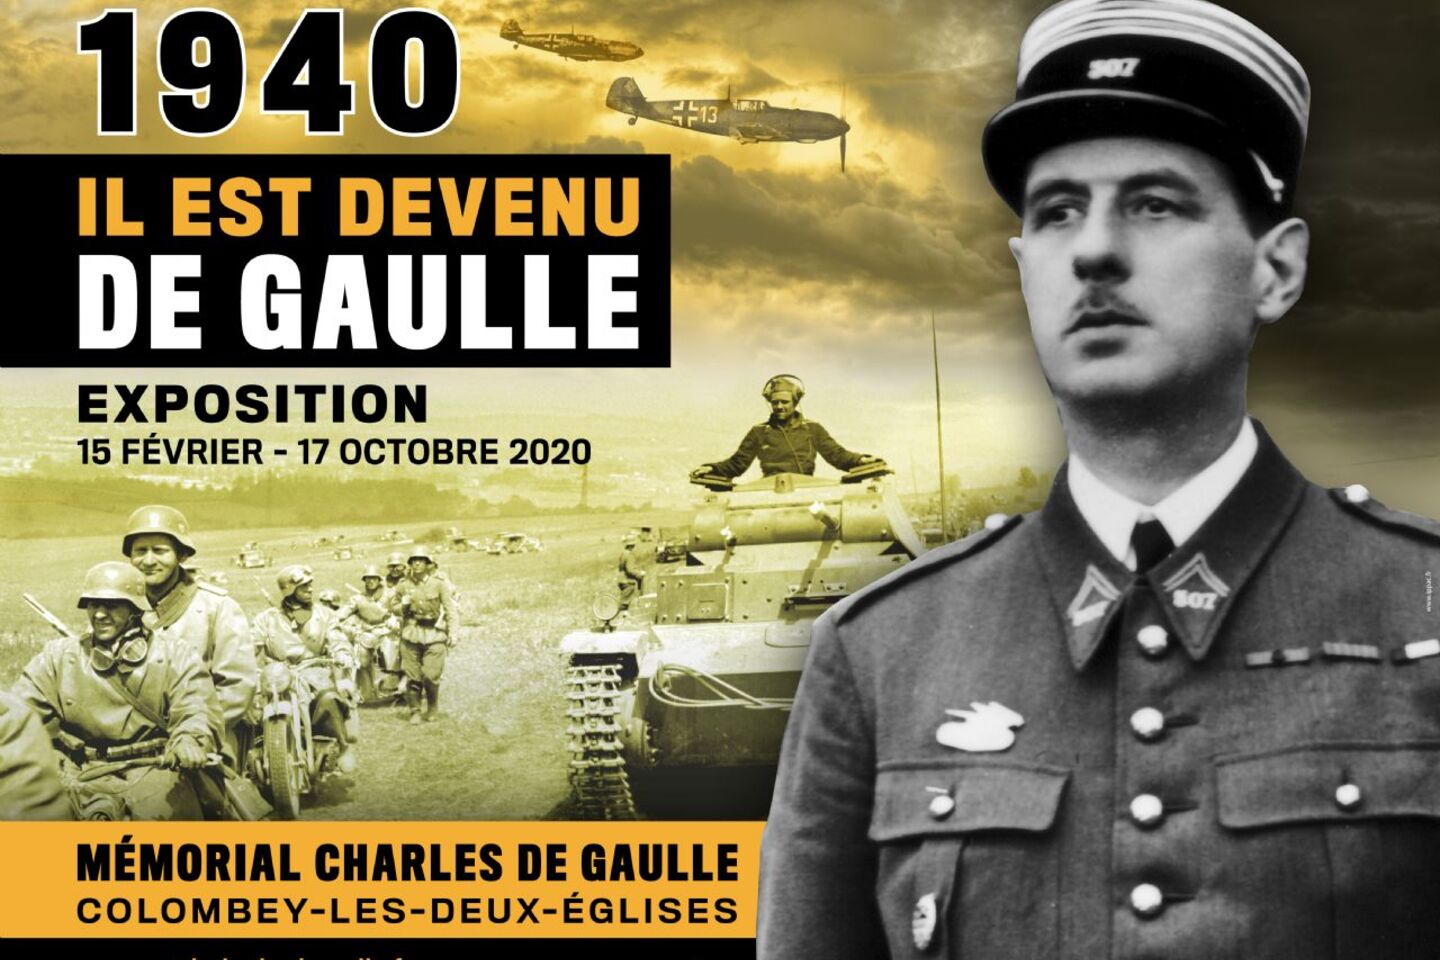 EXPOSITION "1940, IL EST DEVENU DE GAULLE"